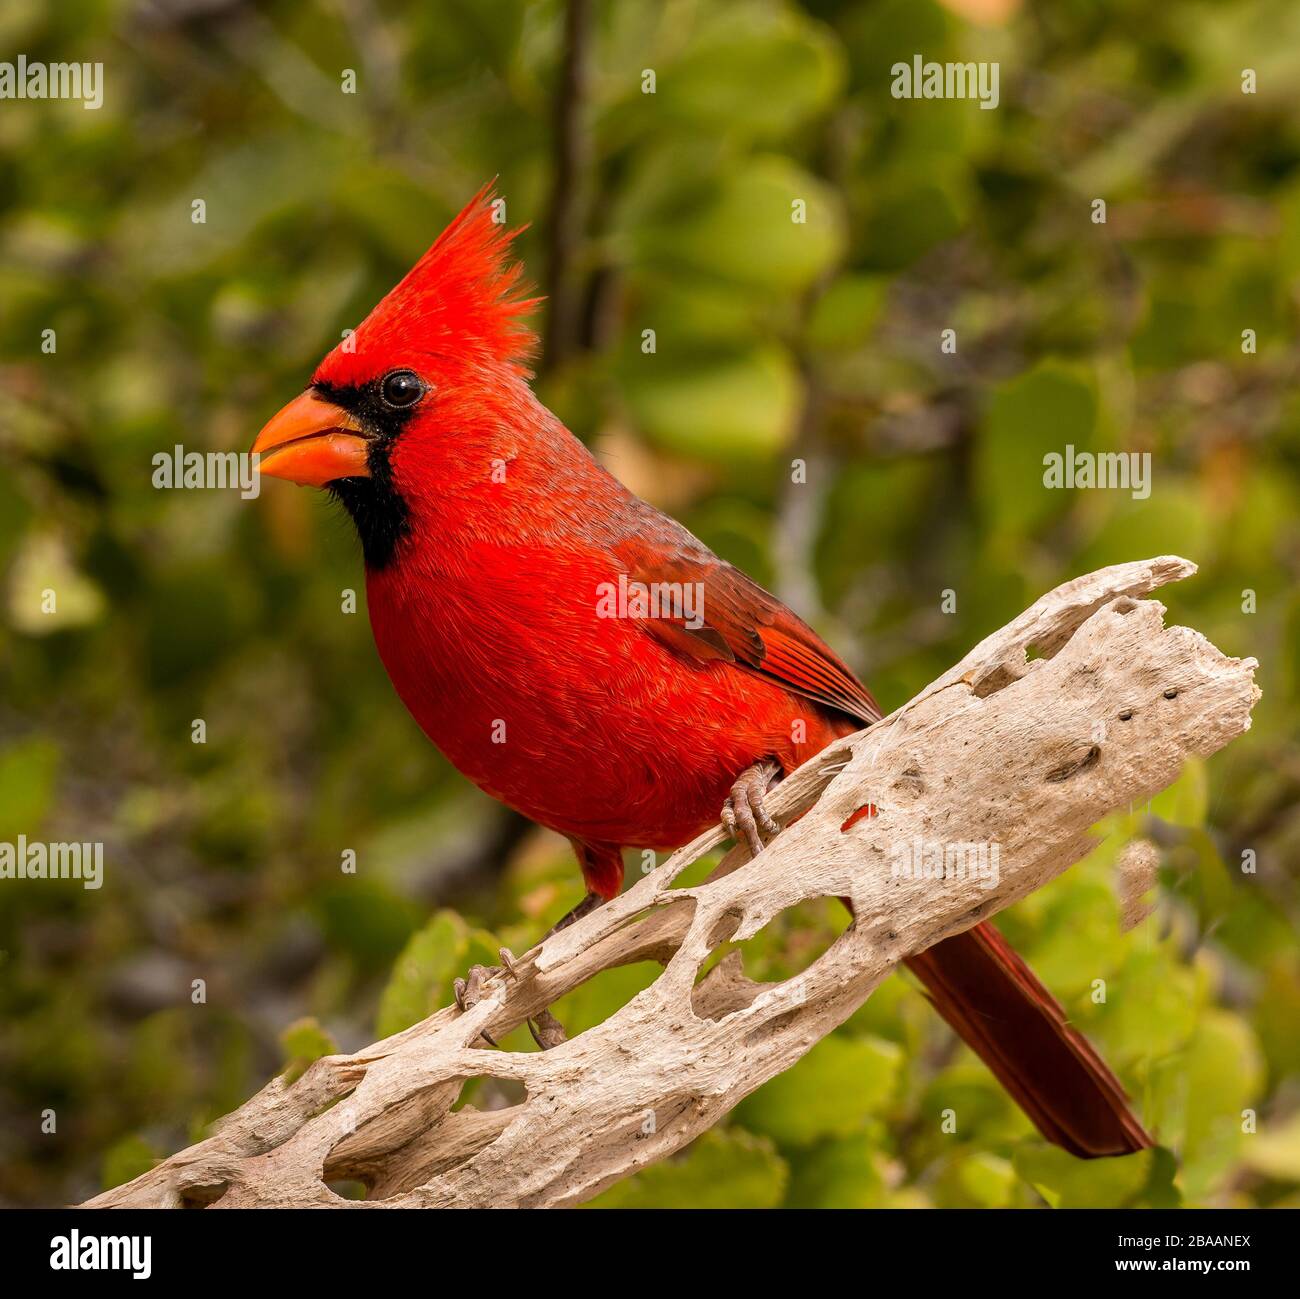 Cardenal macho del norte (Cardinalis cardinalis) persiguiendo en rama, Baja California Sur, México Foto de stock